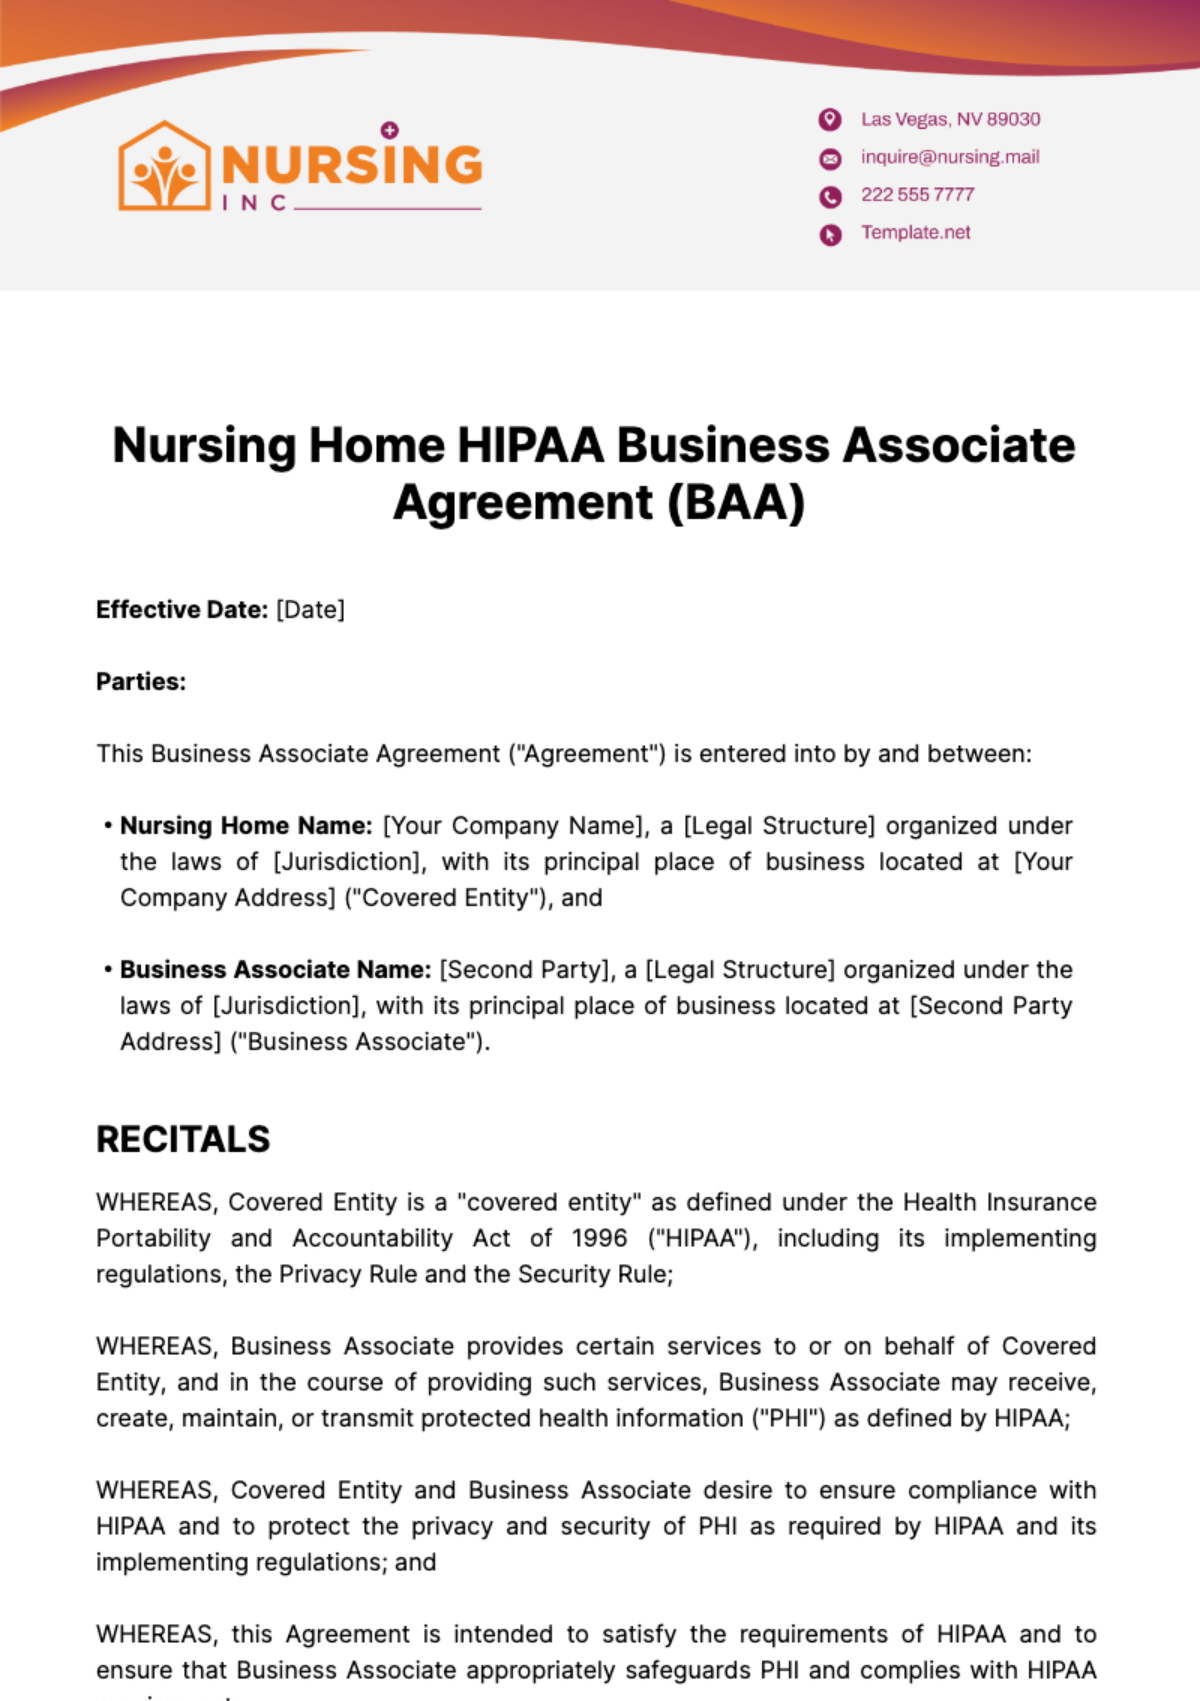 Nursing Home HIPAA Business Associate Agreement (BAA) Template